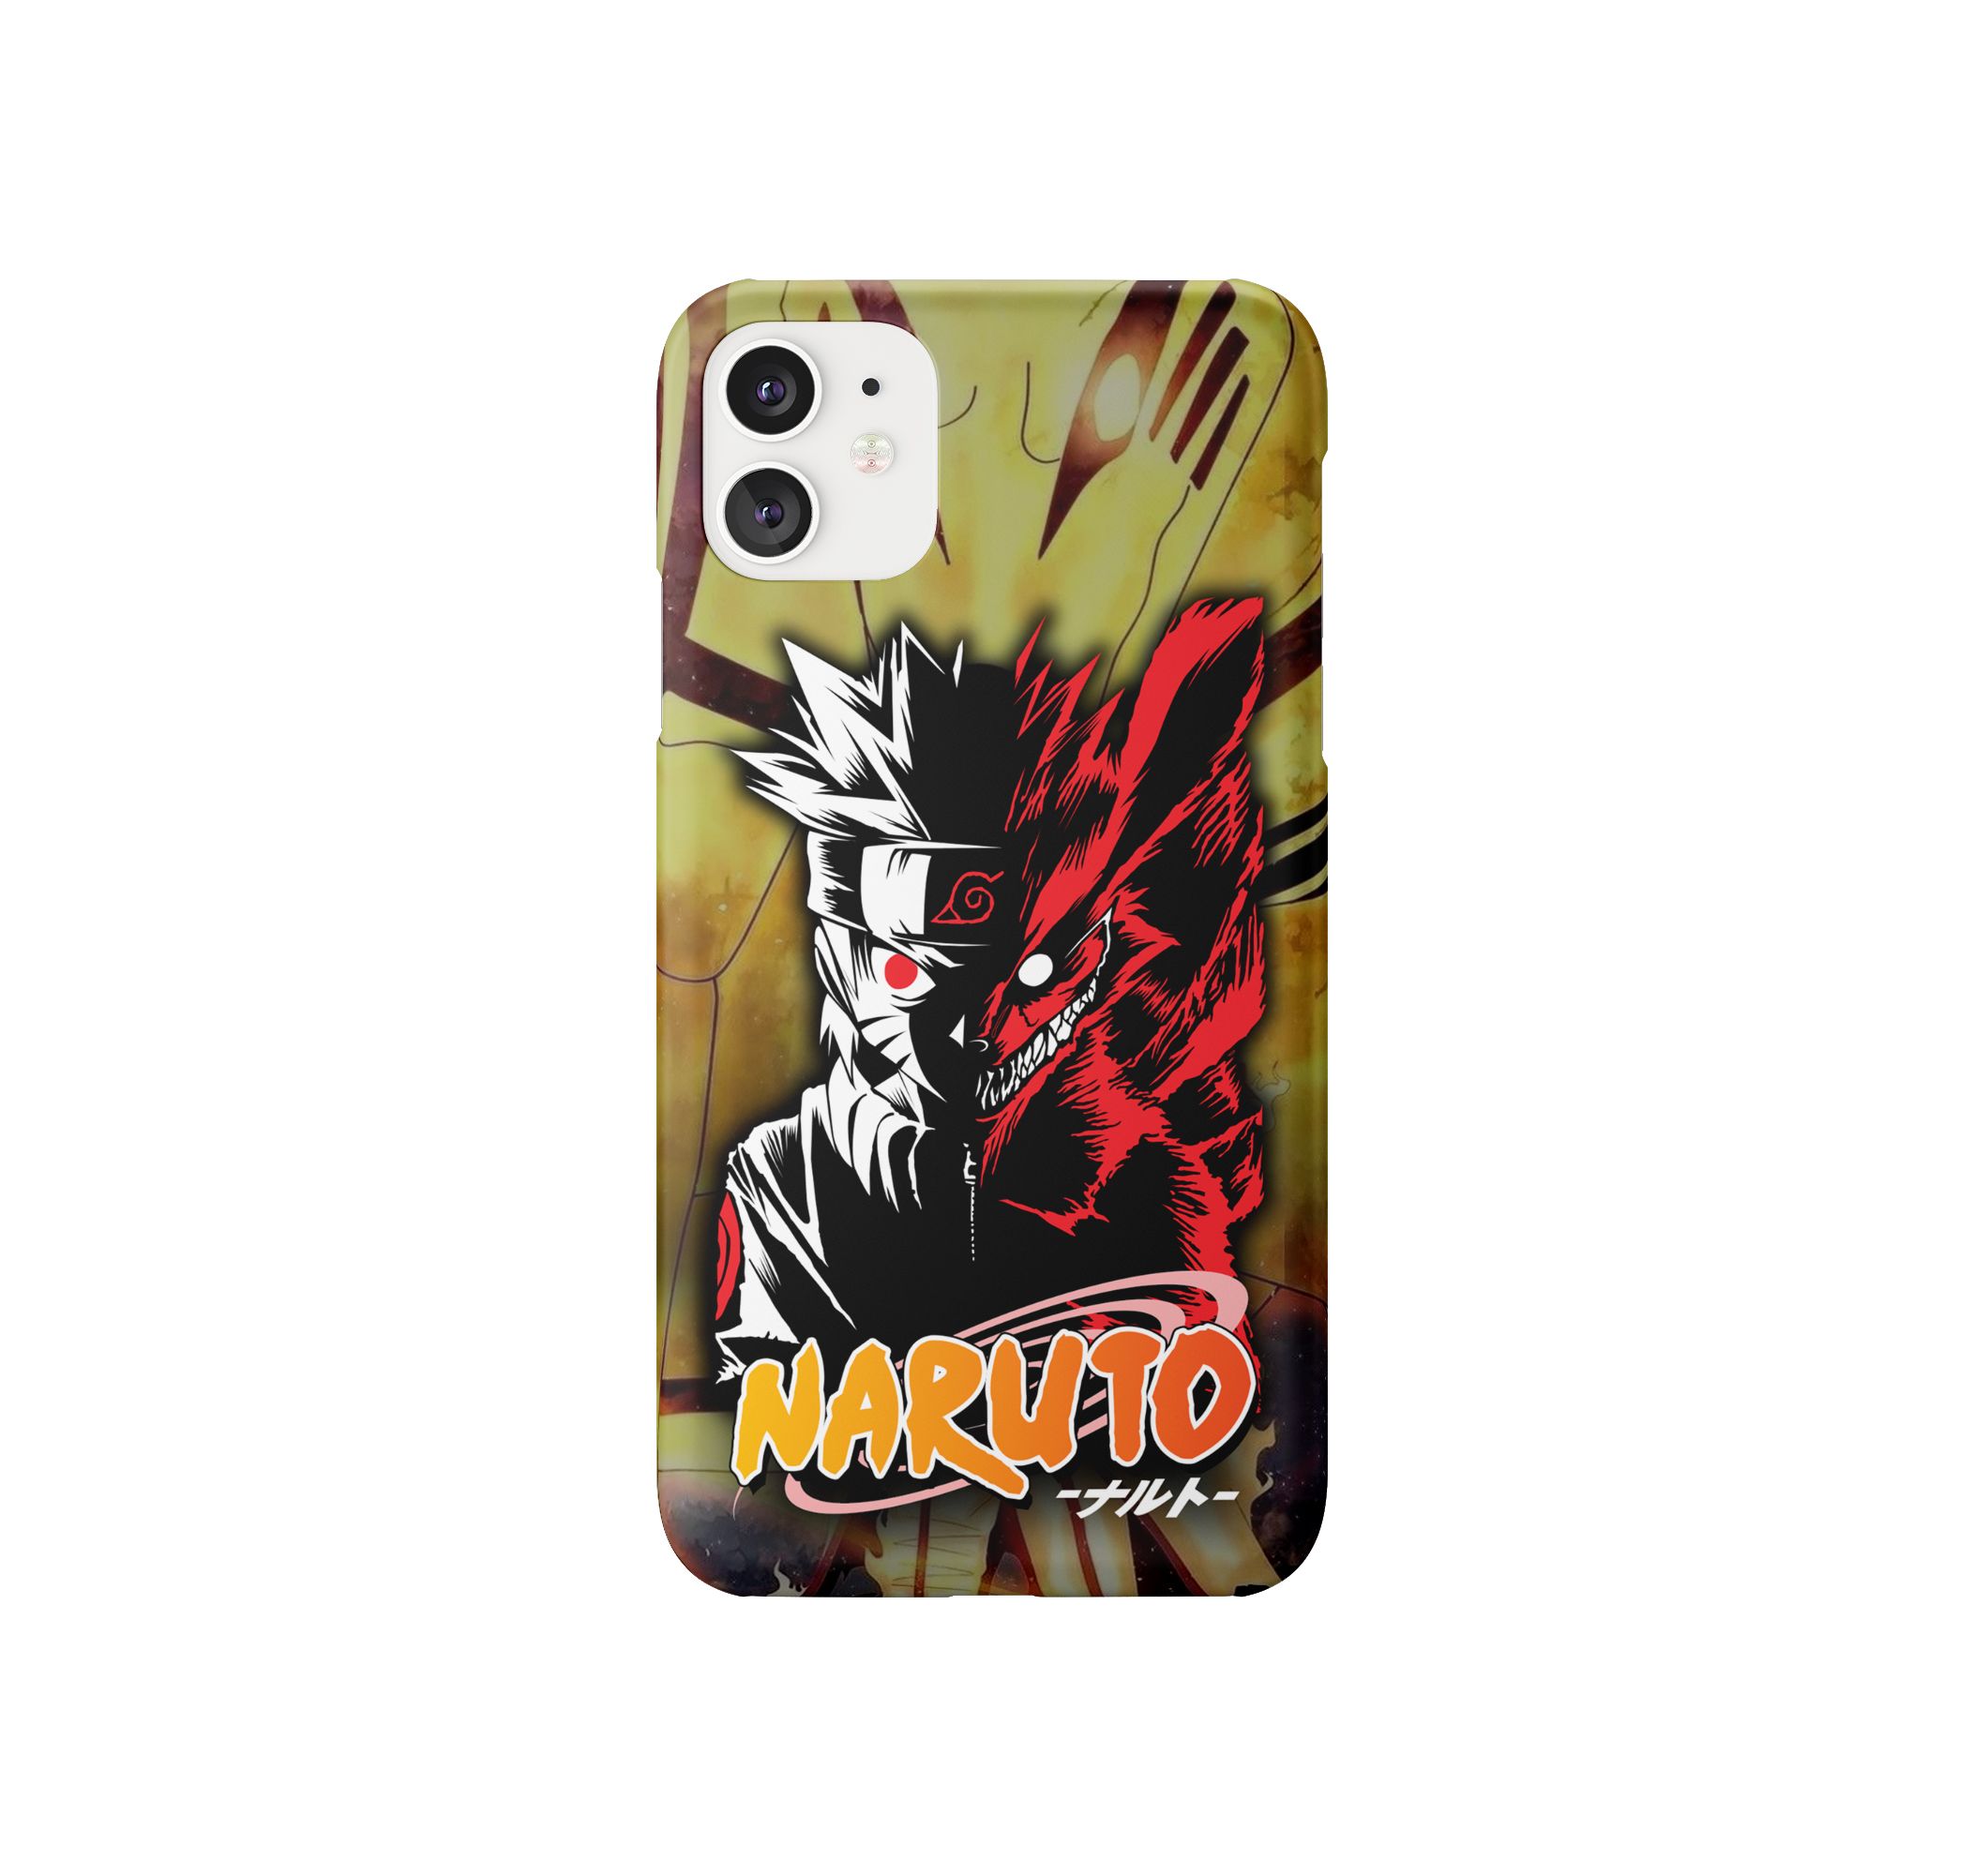 Naruto Mobile Phone Case – Sezzar